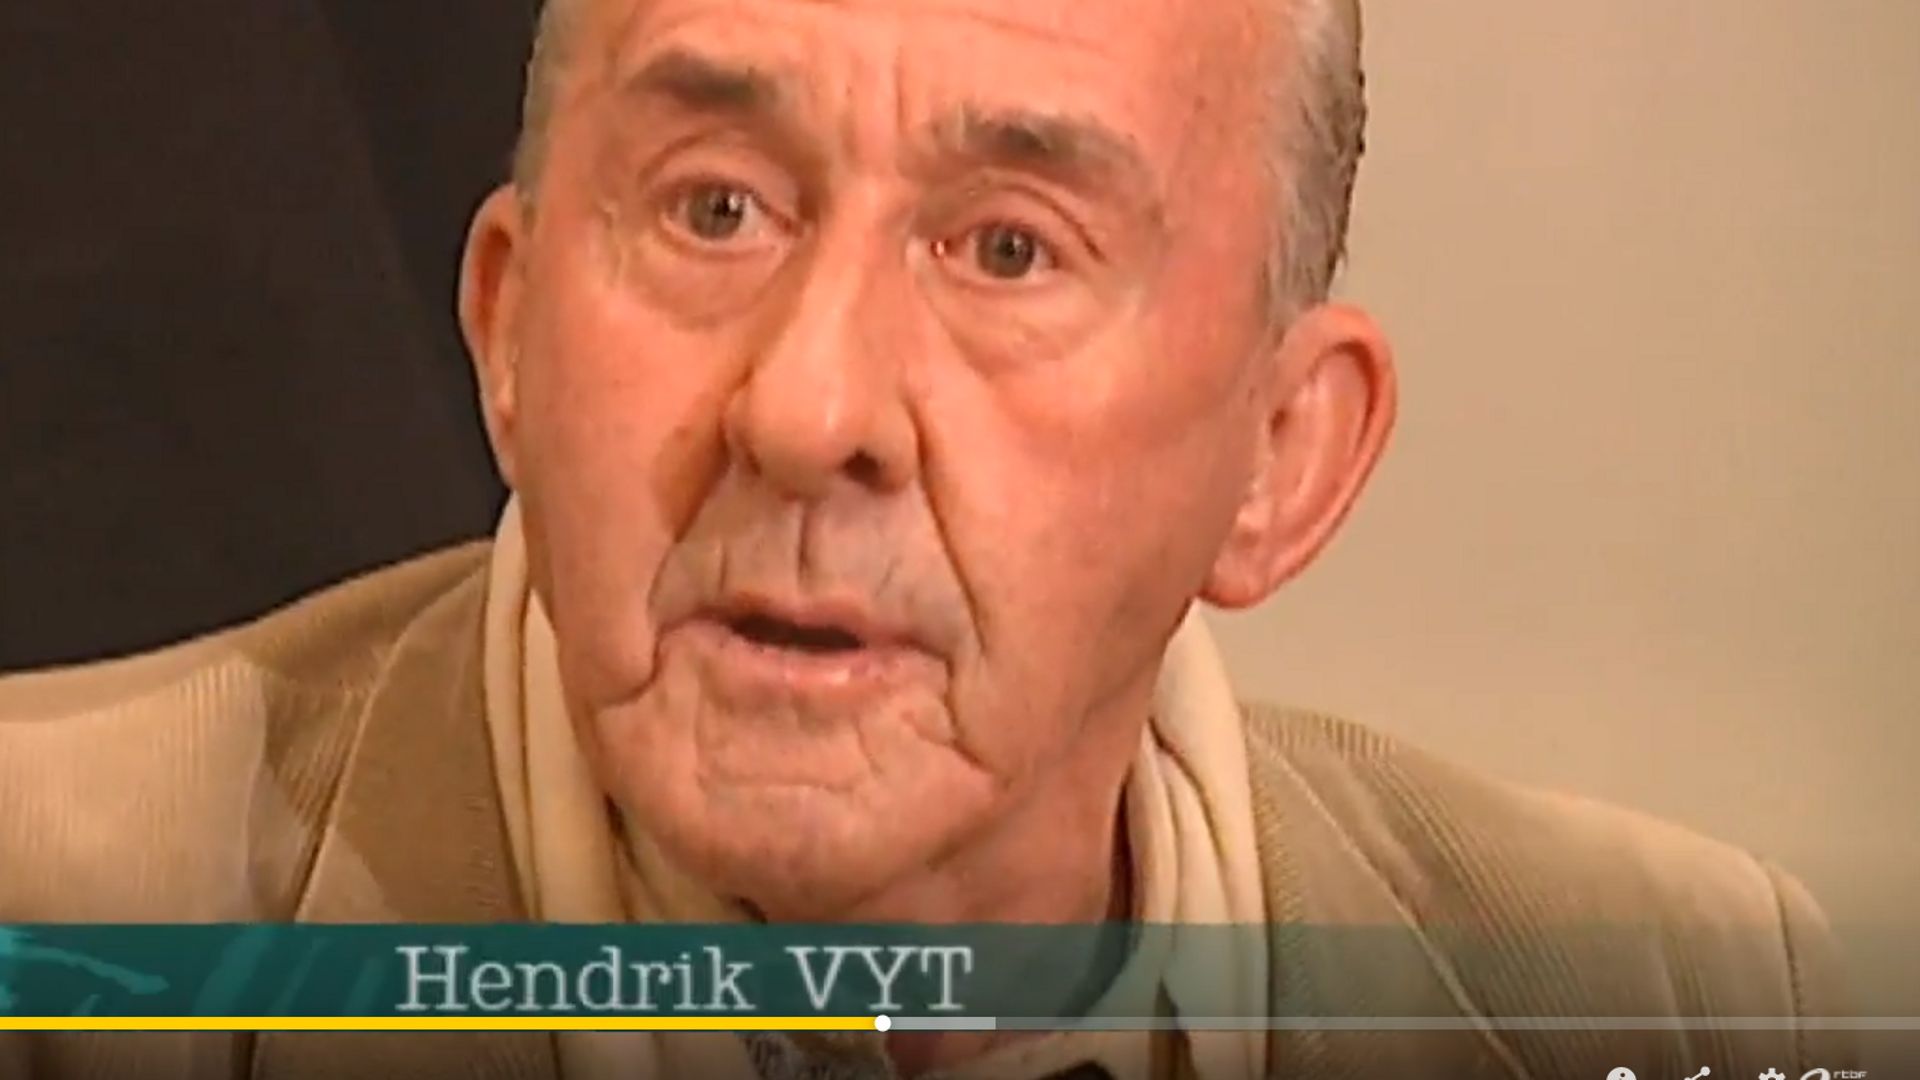 Hendrik Vyt, trois ans avant les faits, lors d’un reportage d’Au nom de la loi consacré au Vlaams Blok.